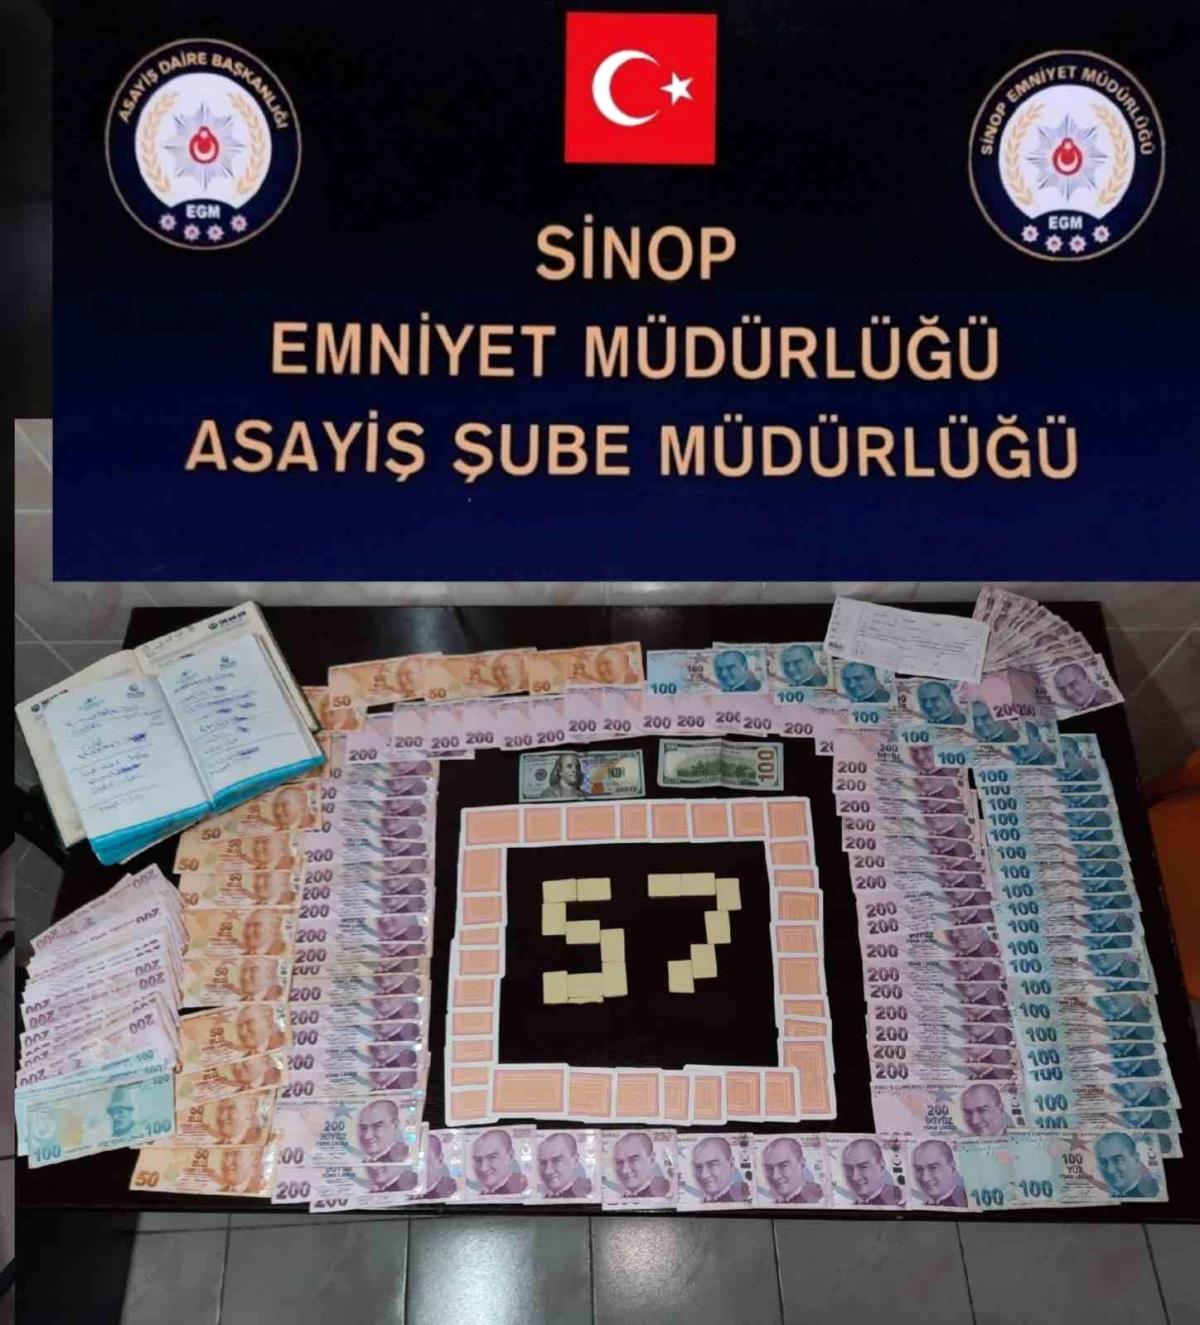 Sinop'ta kumar operasyonu: 8 şahsa 79 bin lira ceza kesildi